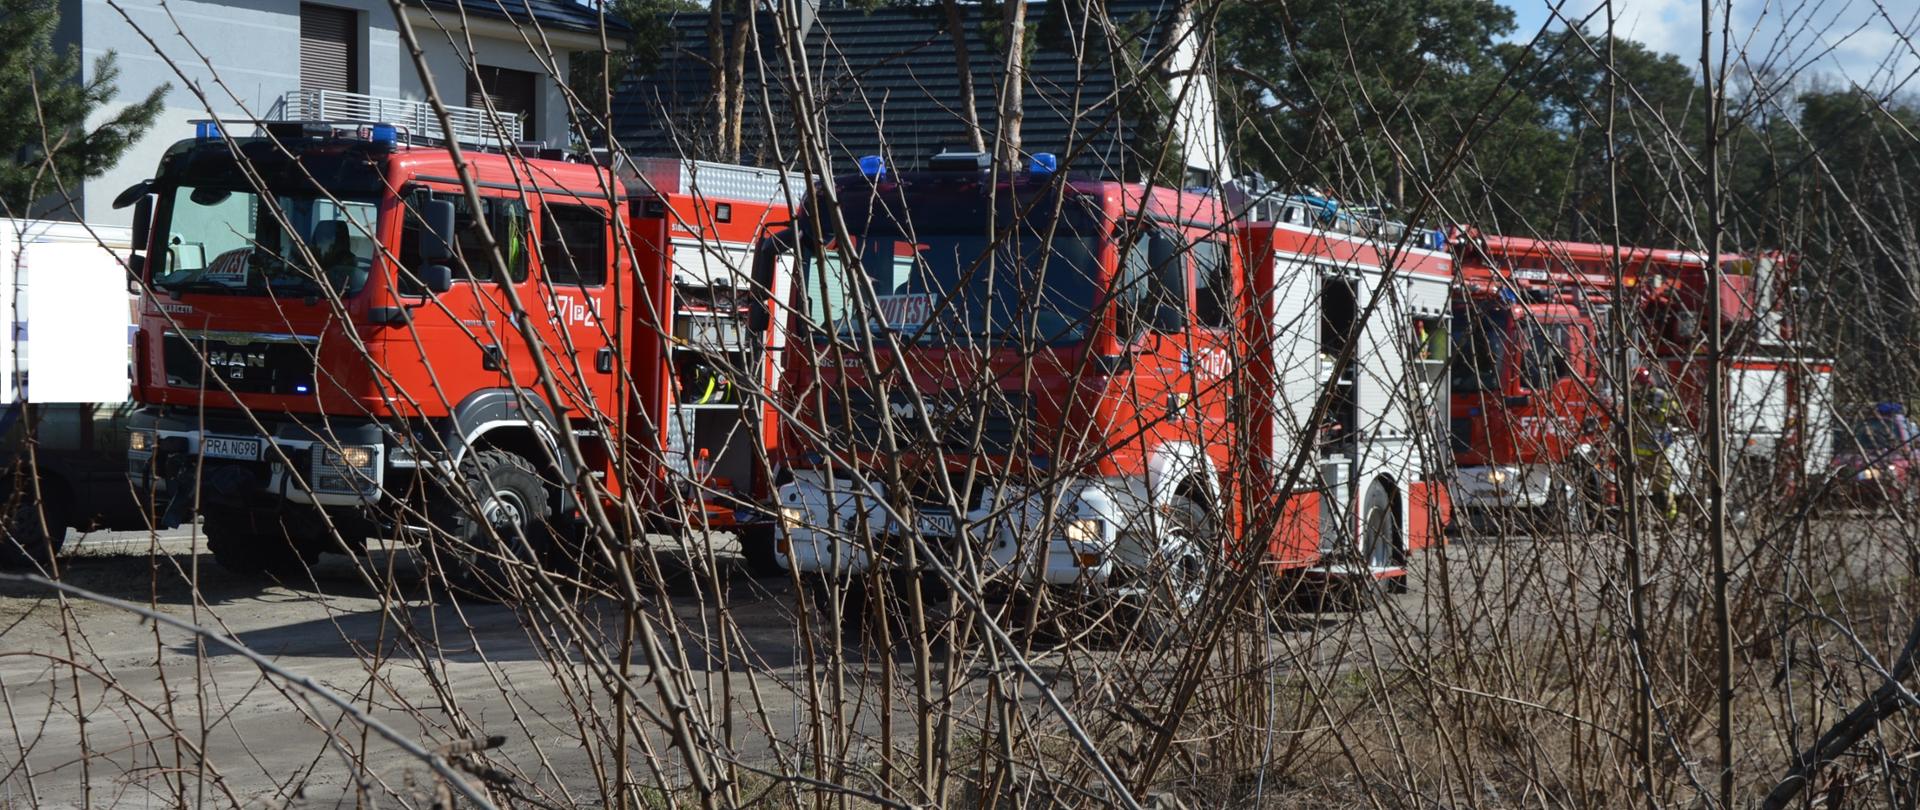 Pożar budynku mieszkalnego w Sierakowie. Na drodze gruntowej - na tle budynków mieszkalnych stoją cztery wozy straży pożarnej. Obok samochodu z podnośnikiem hydraulicznym widoczna jest sylwetka strażaka w czerwonym hełmie. Na pierwszym planie krzewy.